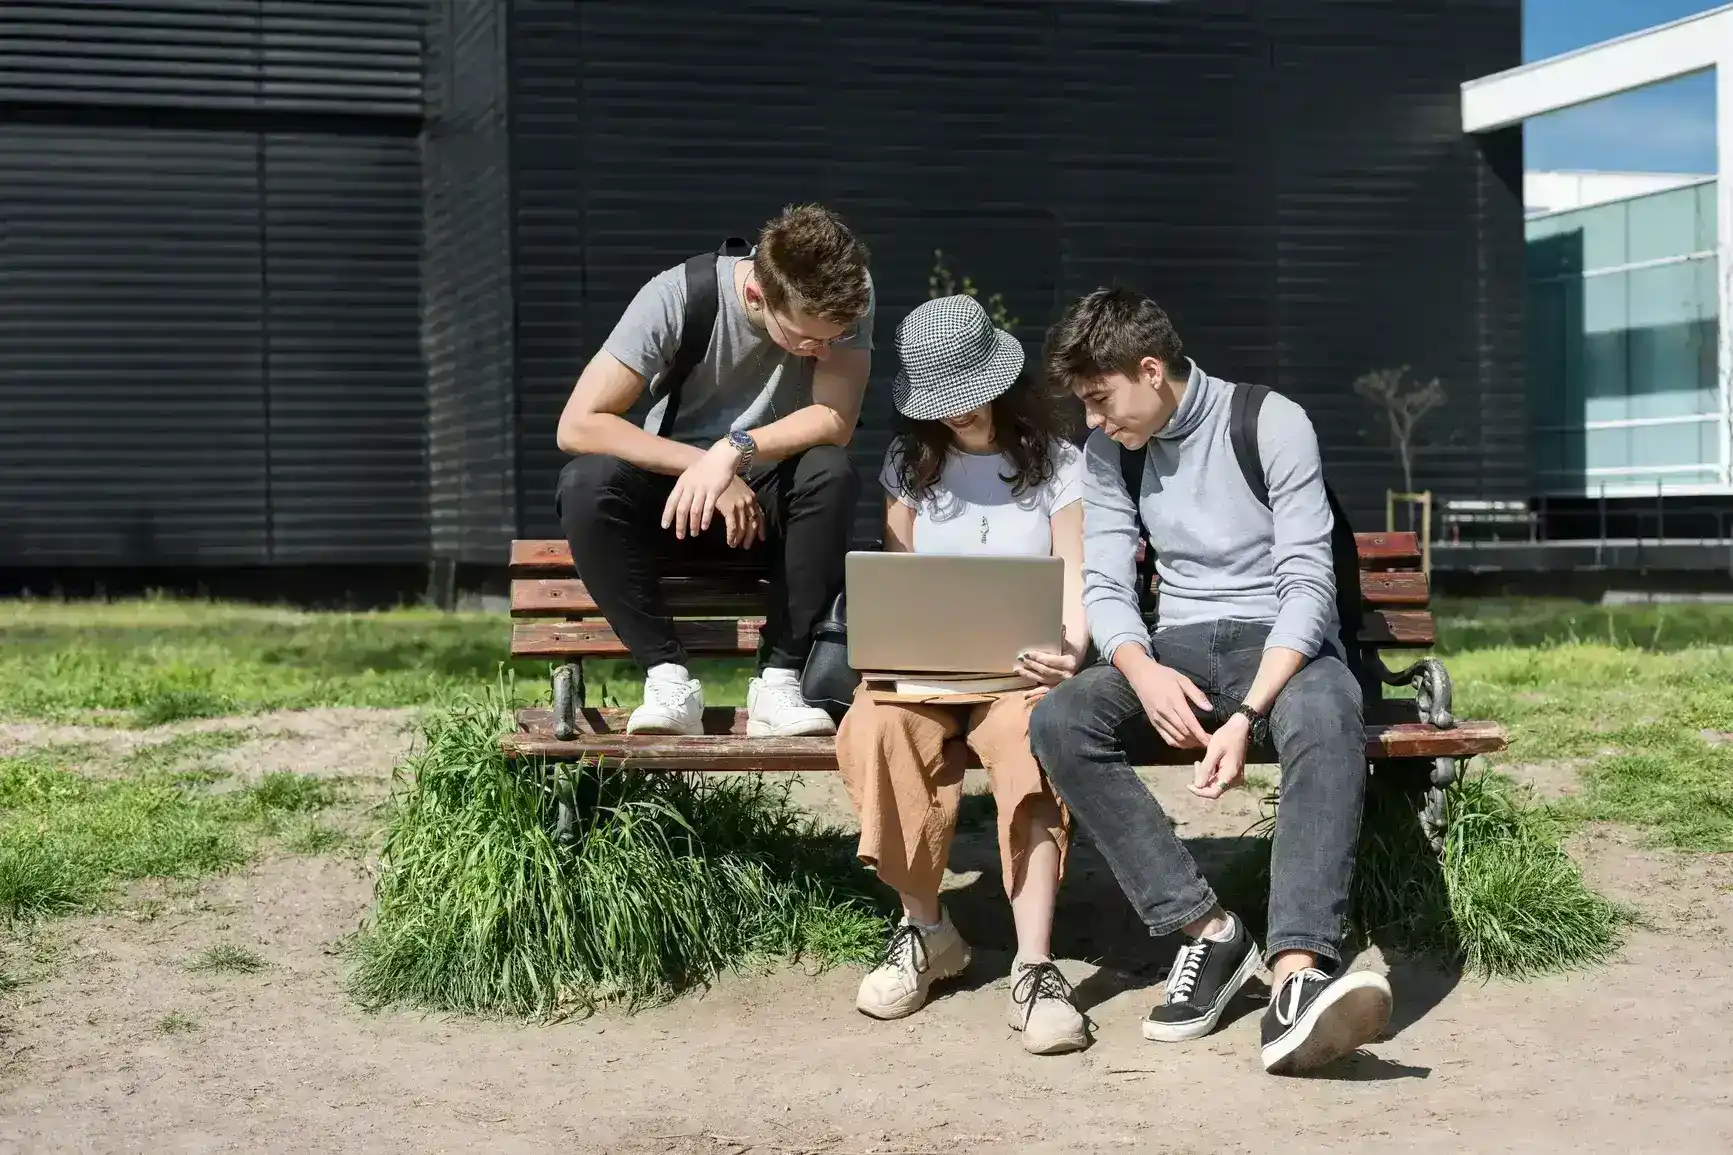 Drei Studenten sitzen auf einer Parkbank und arbeiten an einer Praesentation.